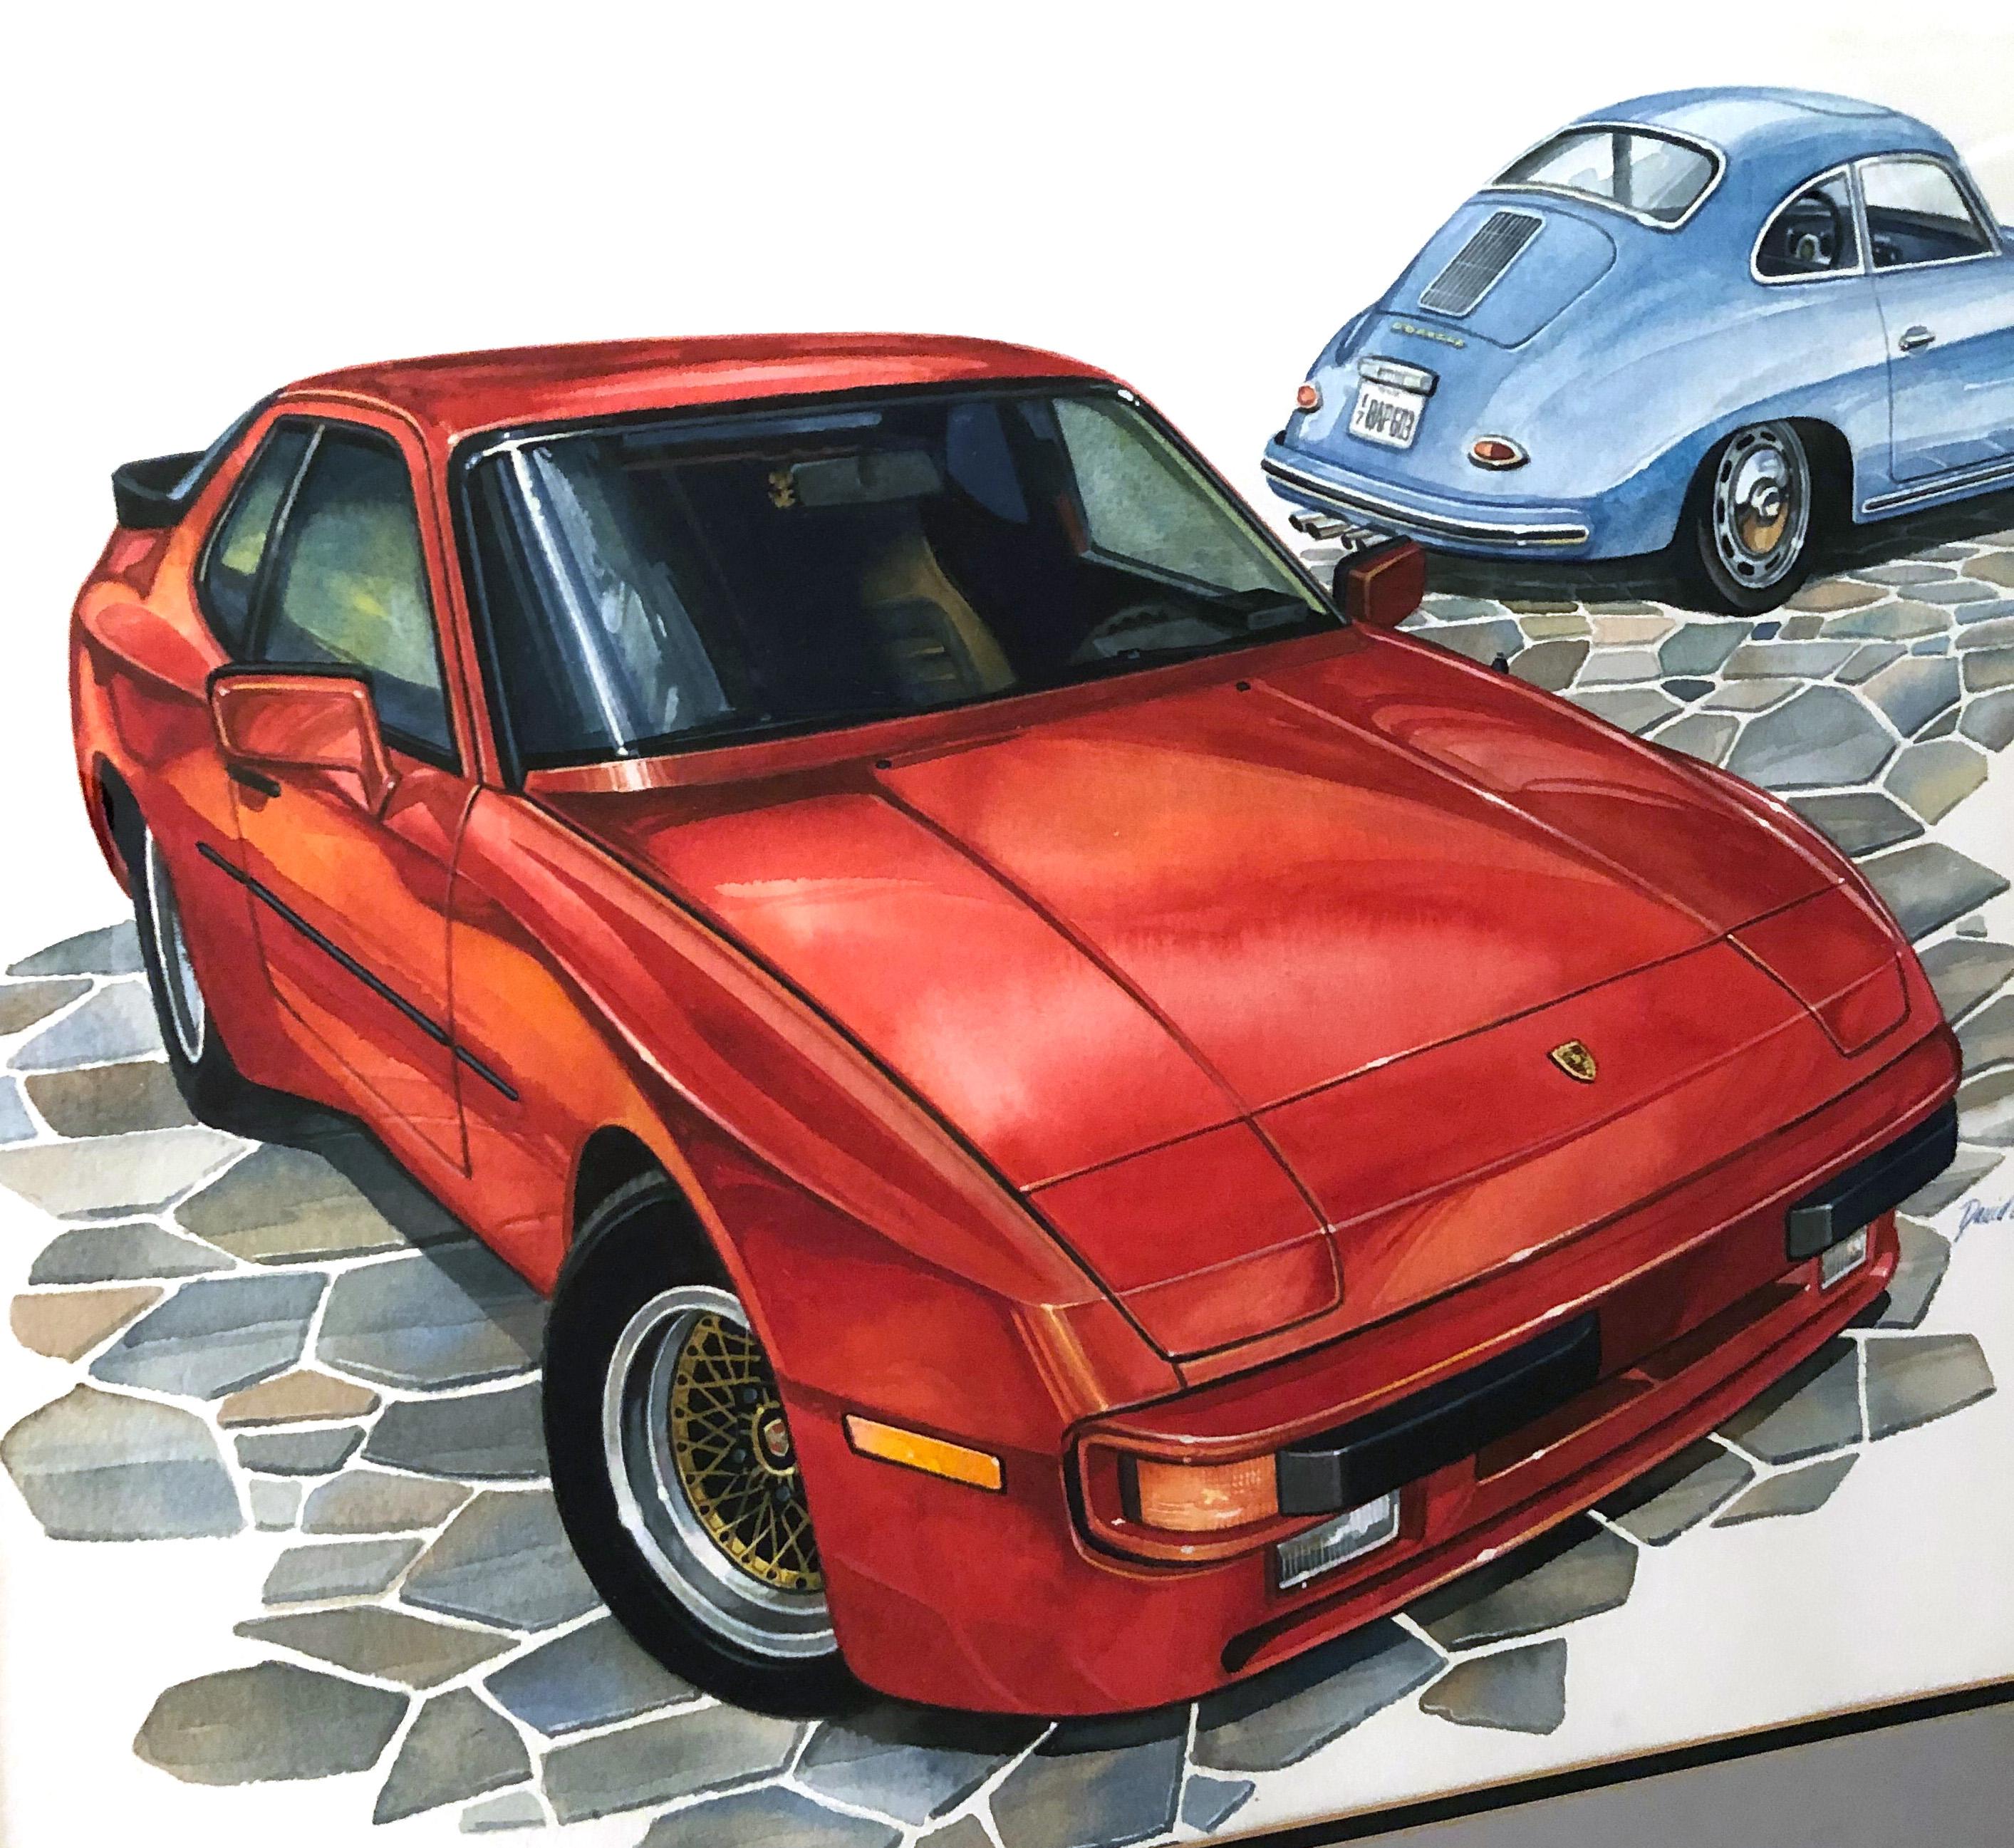 Außergewöhnliches Aquarell auf Papier von zwei Porsche-Automobilen, einem 944 und einem 356, von dem famosen Automobil- und Luftfahrtkünstler David Lord. Signiert und datiert, 1985. 

Abmessungen des Bildes: 16.75